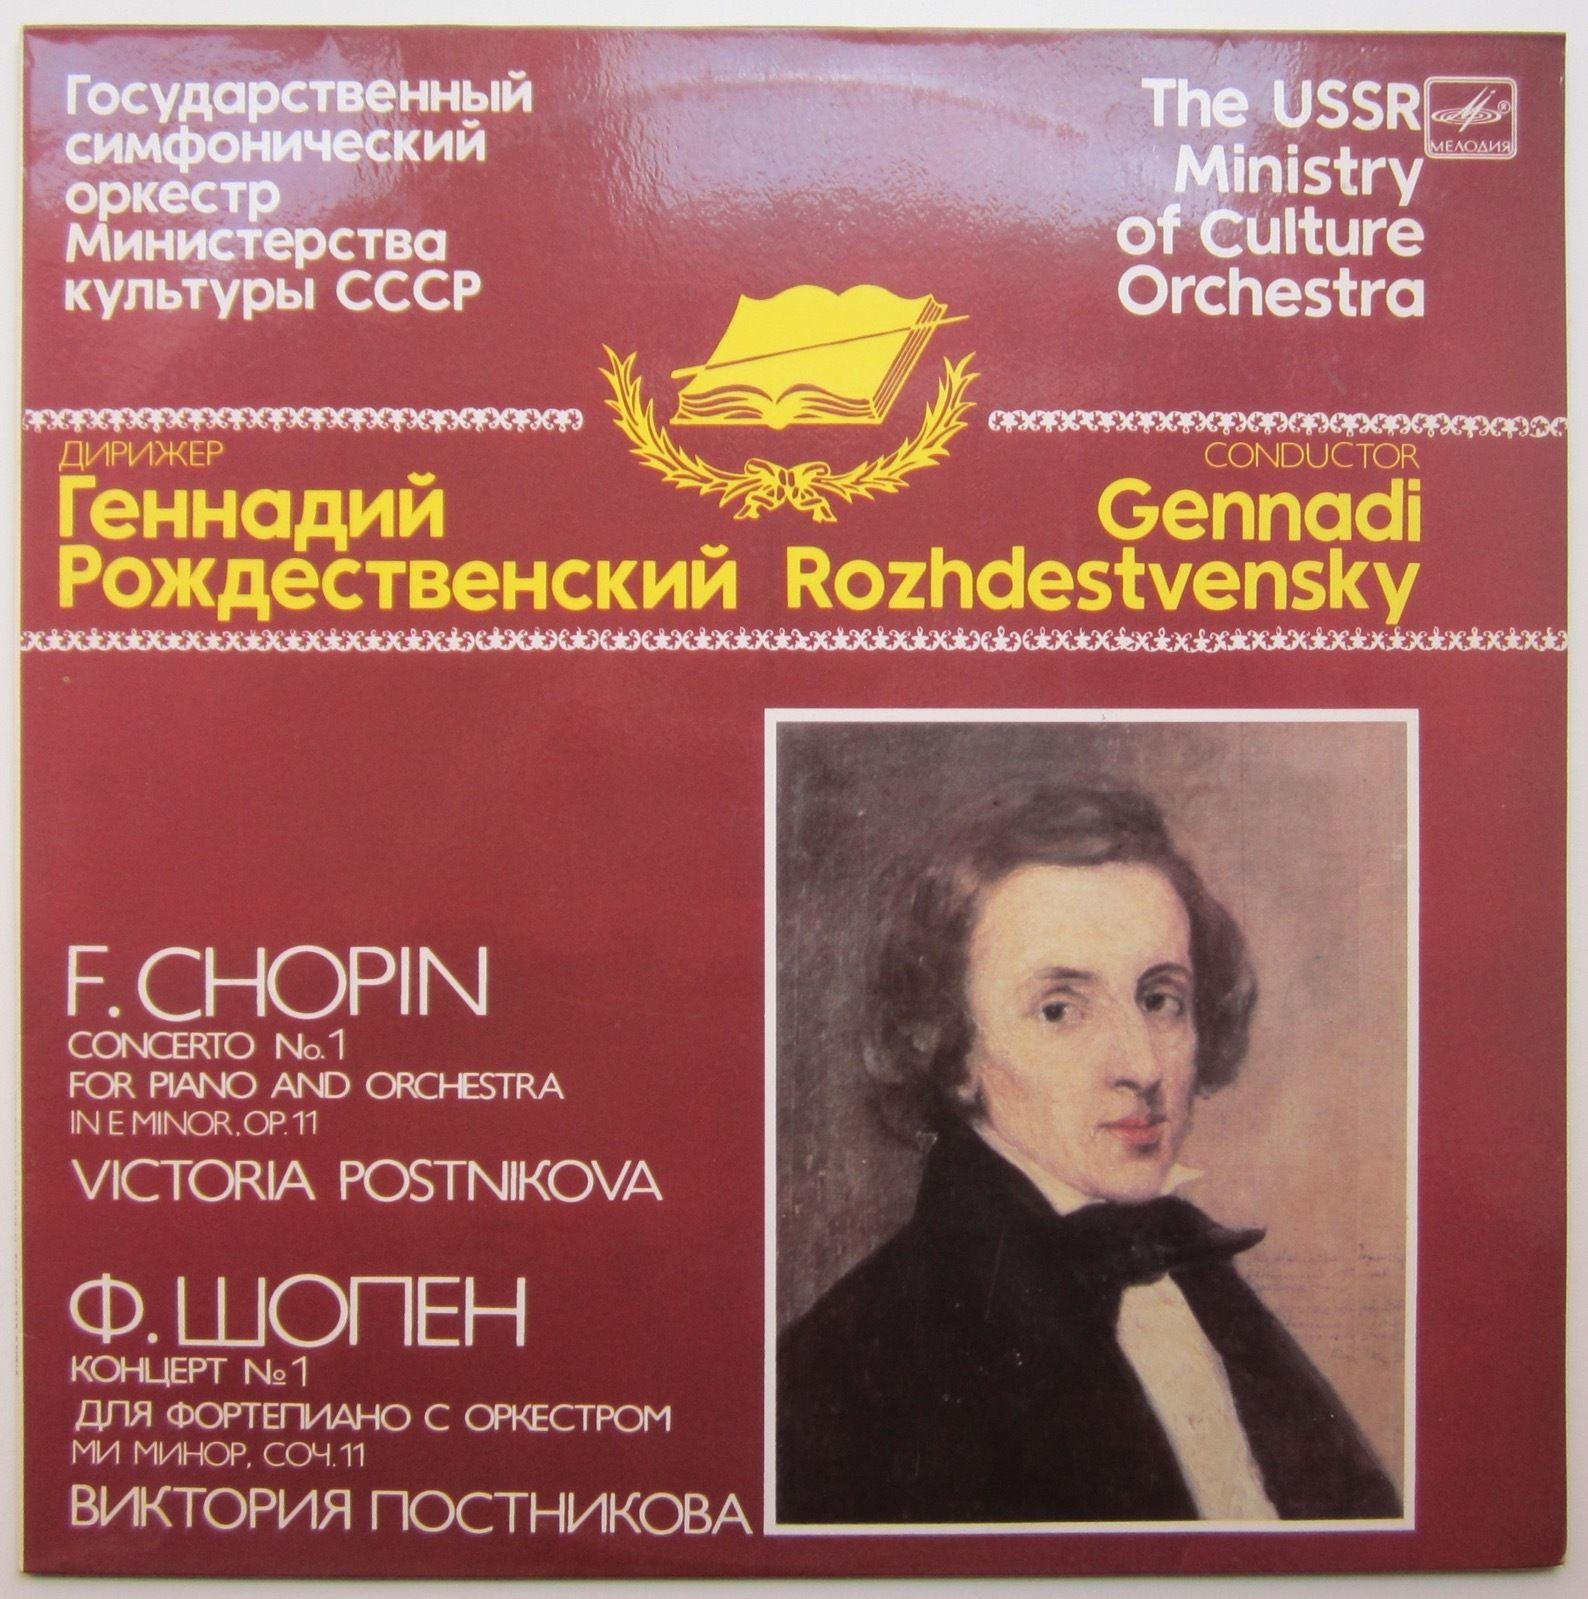 Ф. ШОПЕН (1810-1849): Концерт № 1 для ф-но с оркестром (В. Постникова)